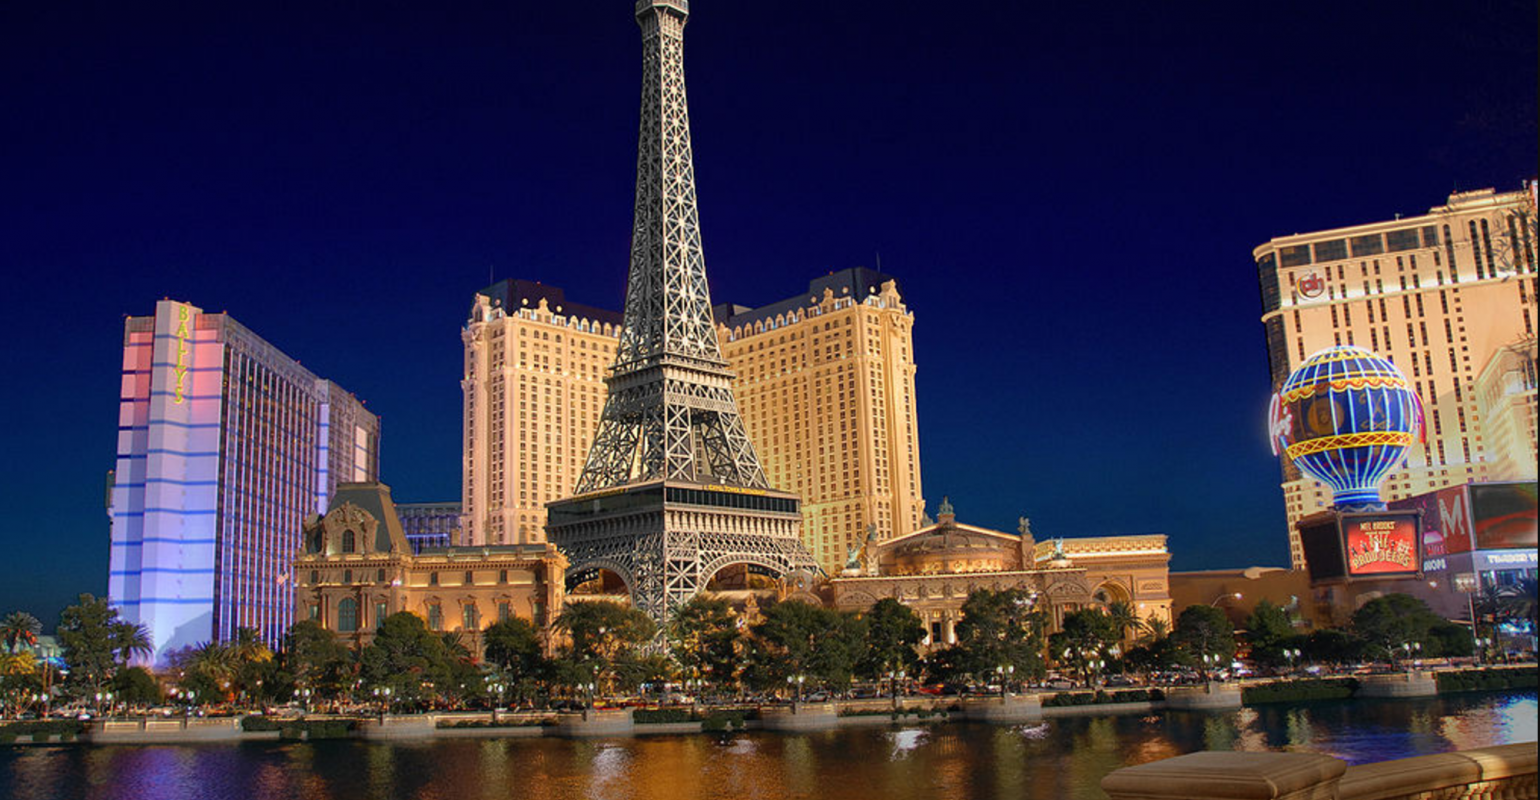 Paris Las Vegas - Las Vegas, NV, US Meeting Venues and Event Space